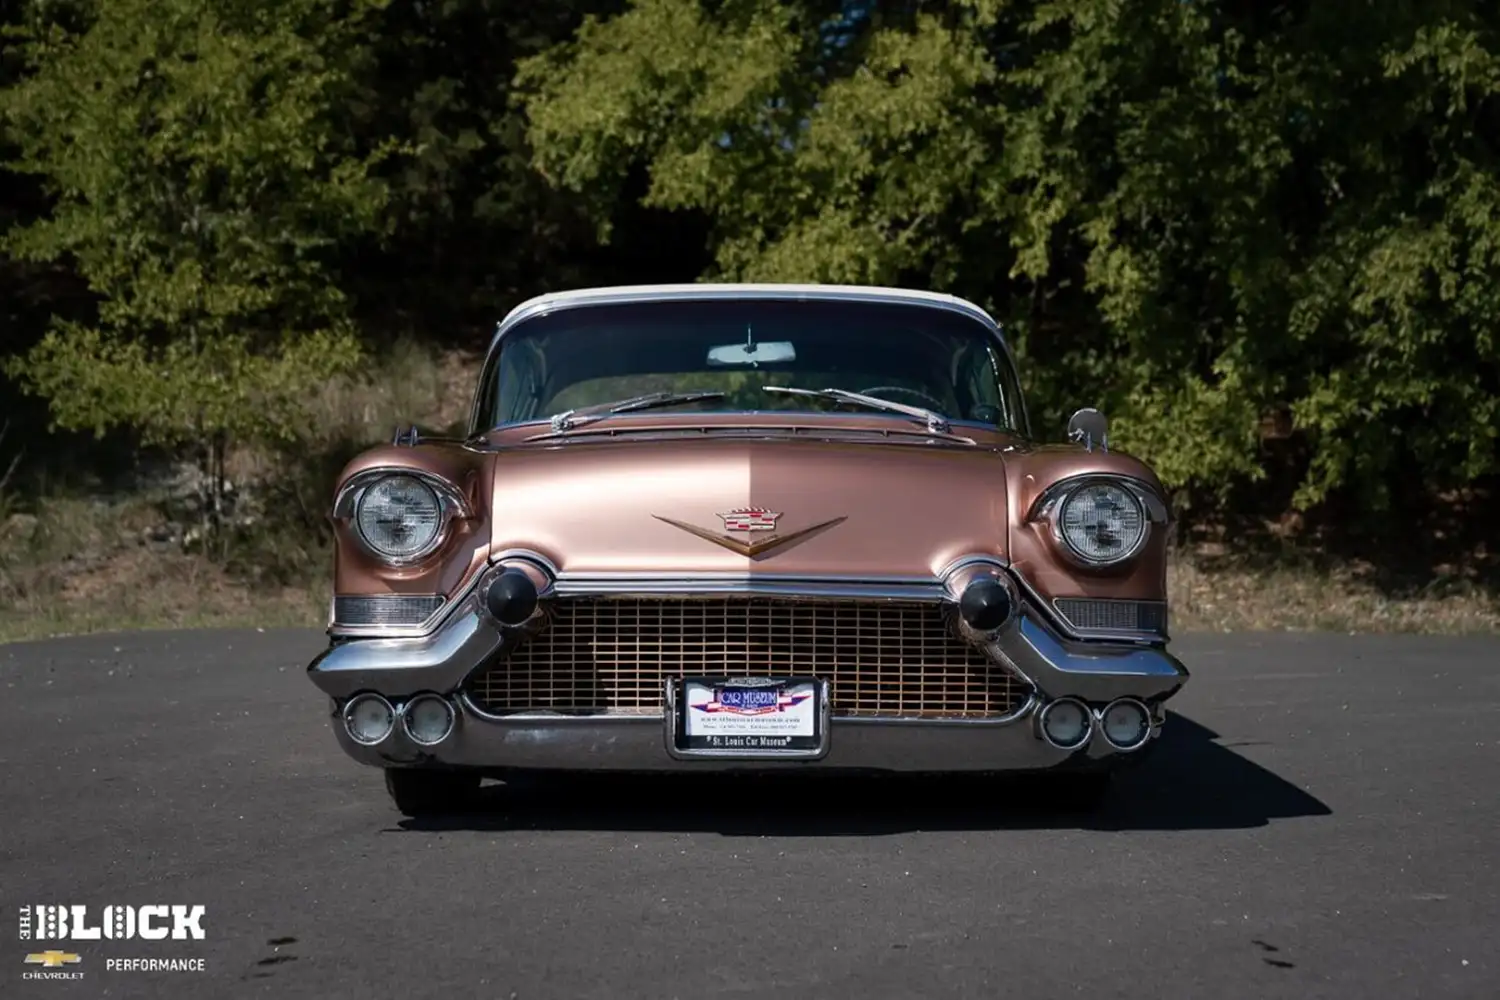 1957 Cadillac Eldorado Seville “Rosie”